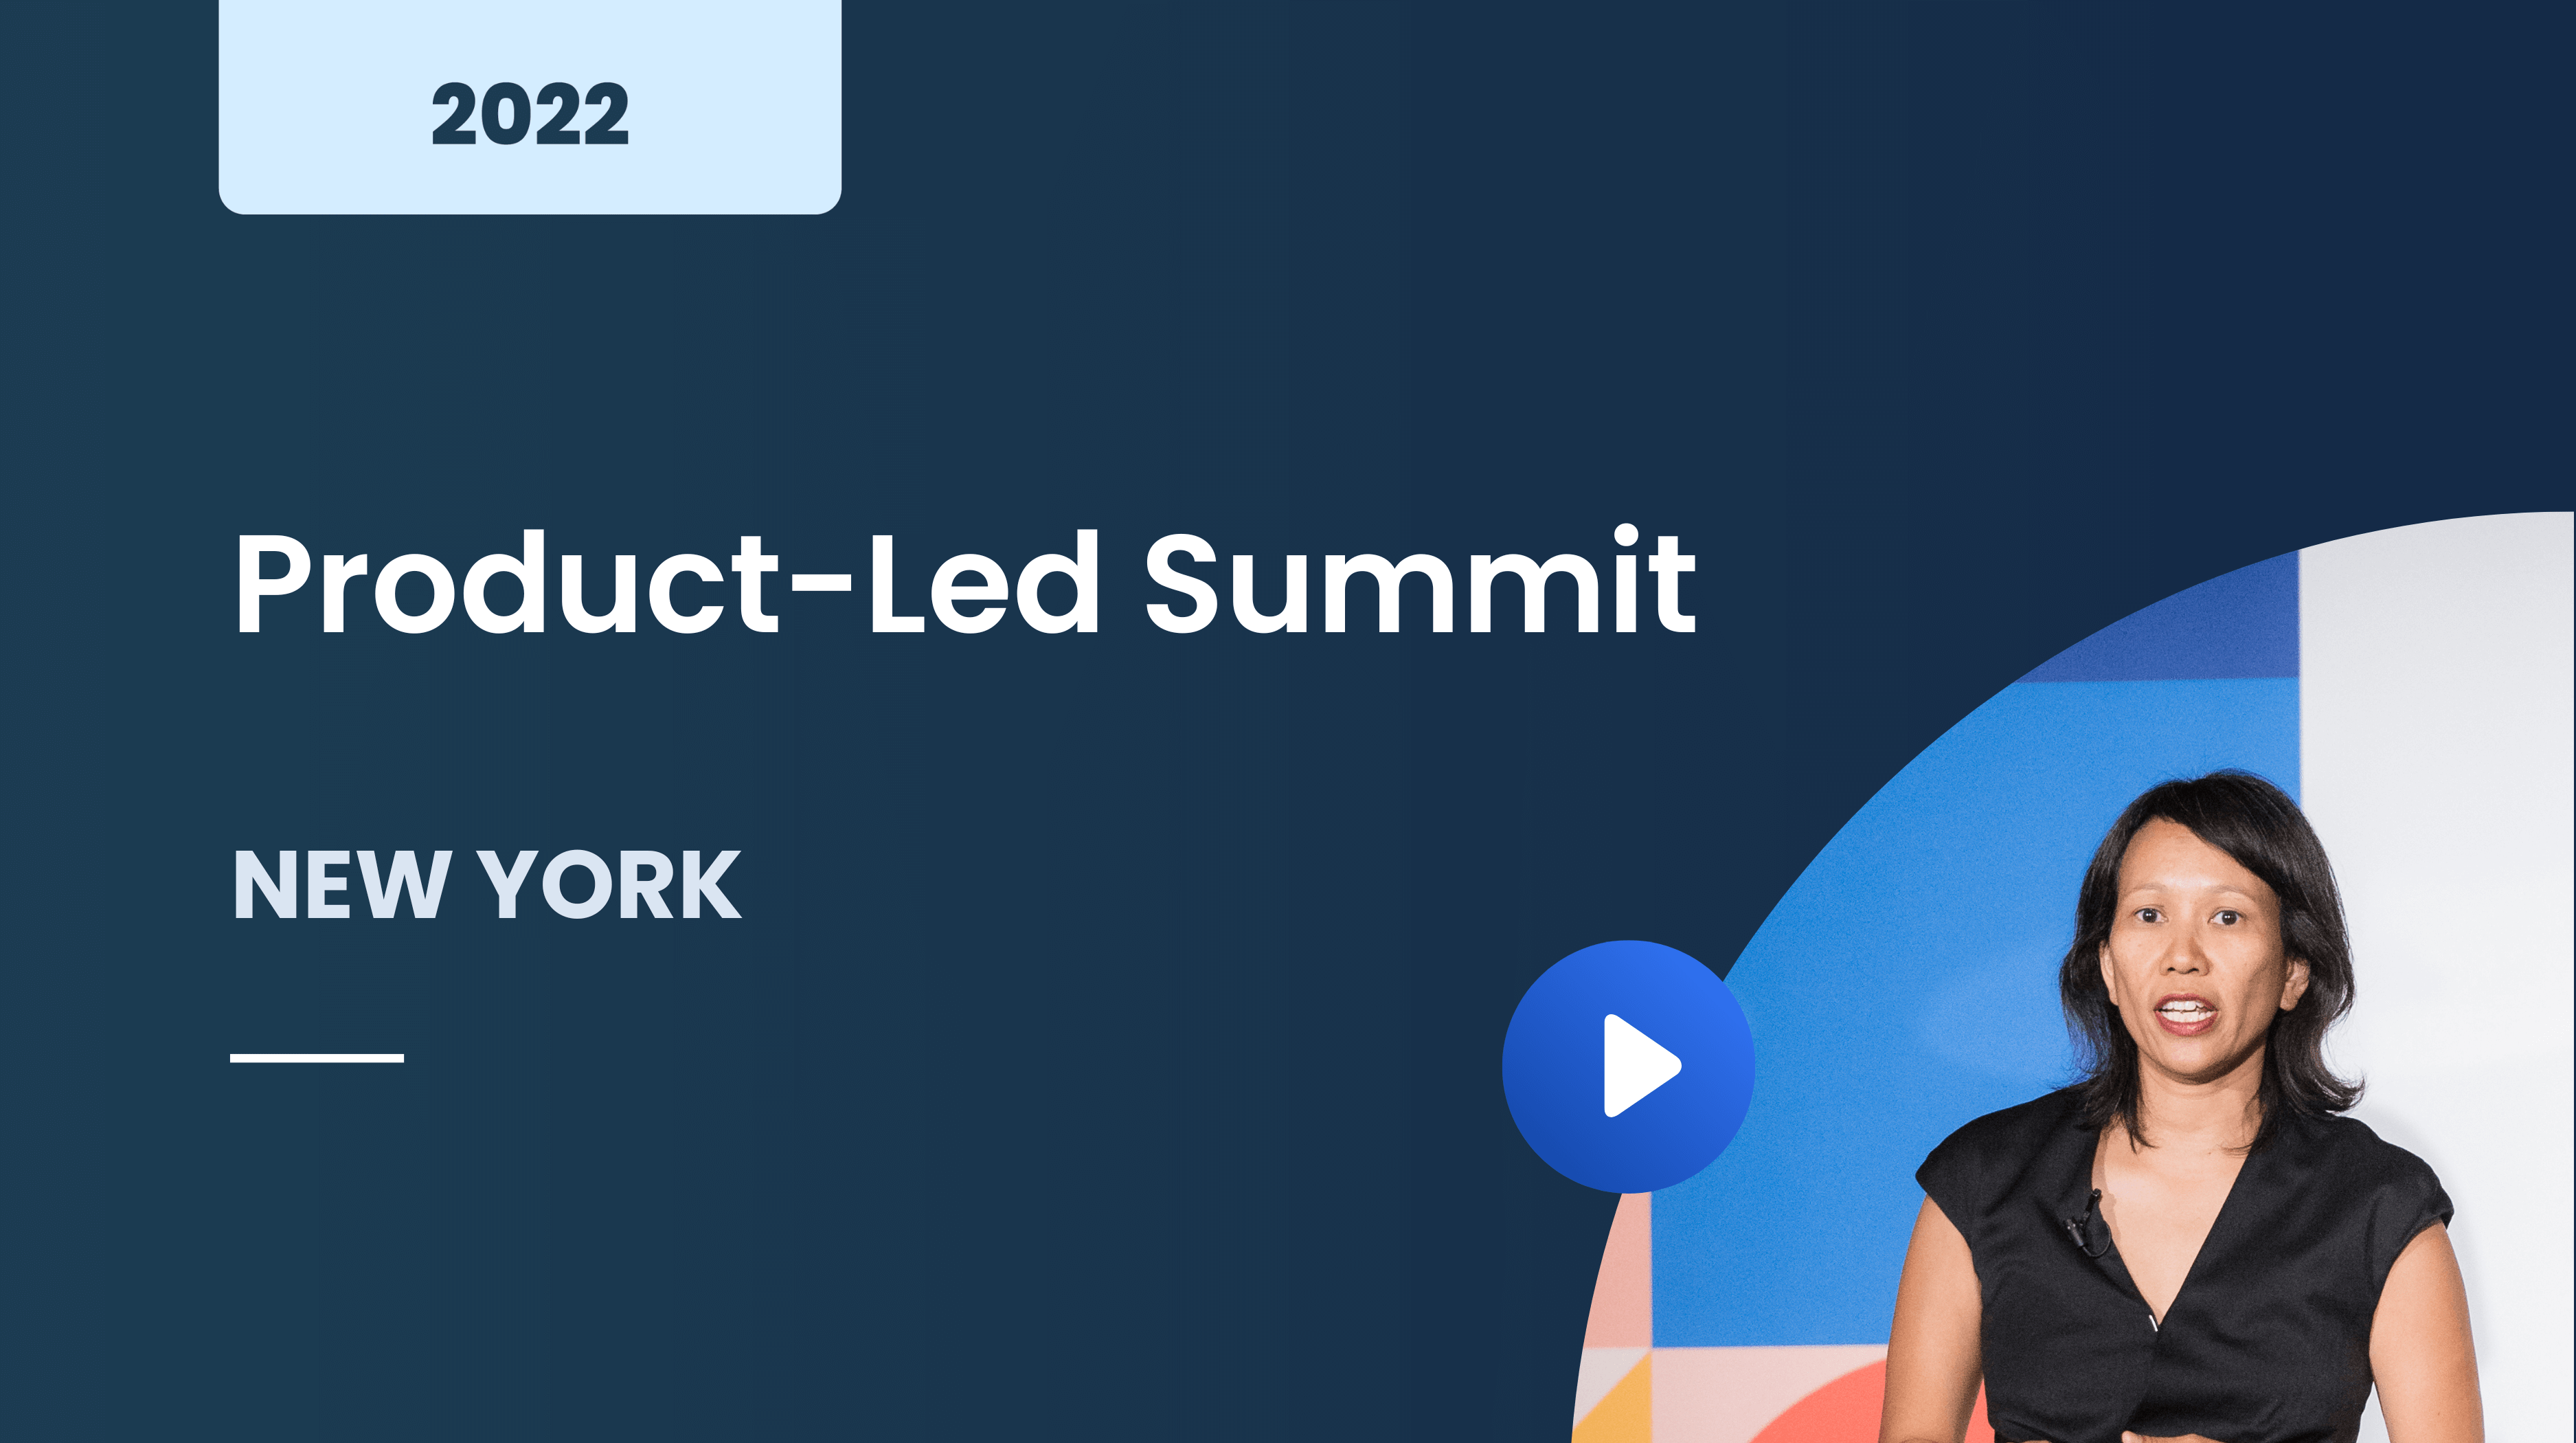 Product-Led Summit New York 2022